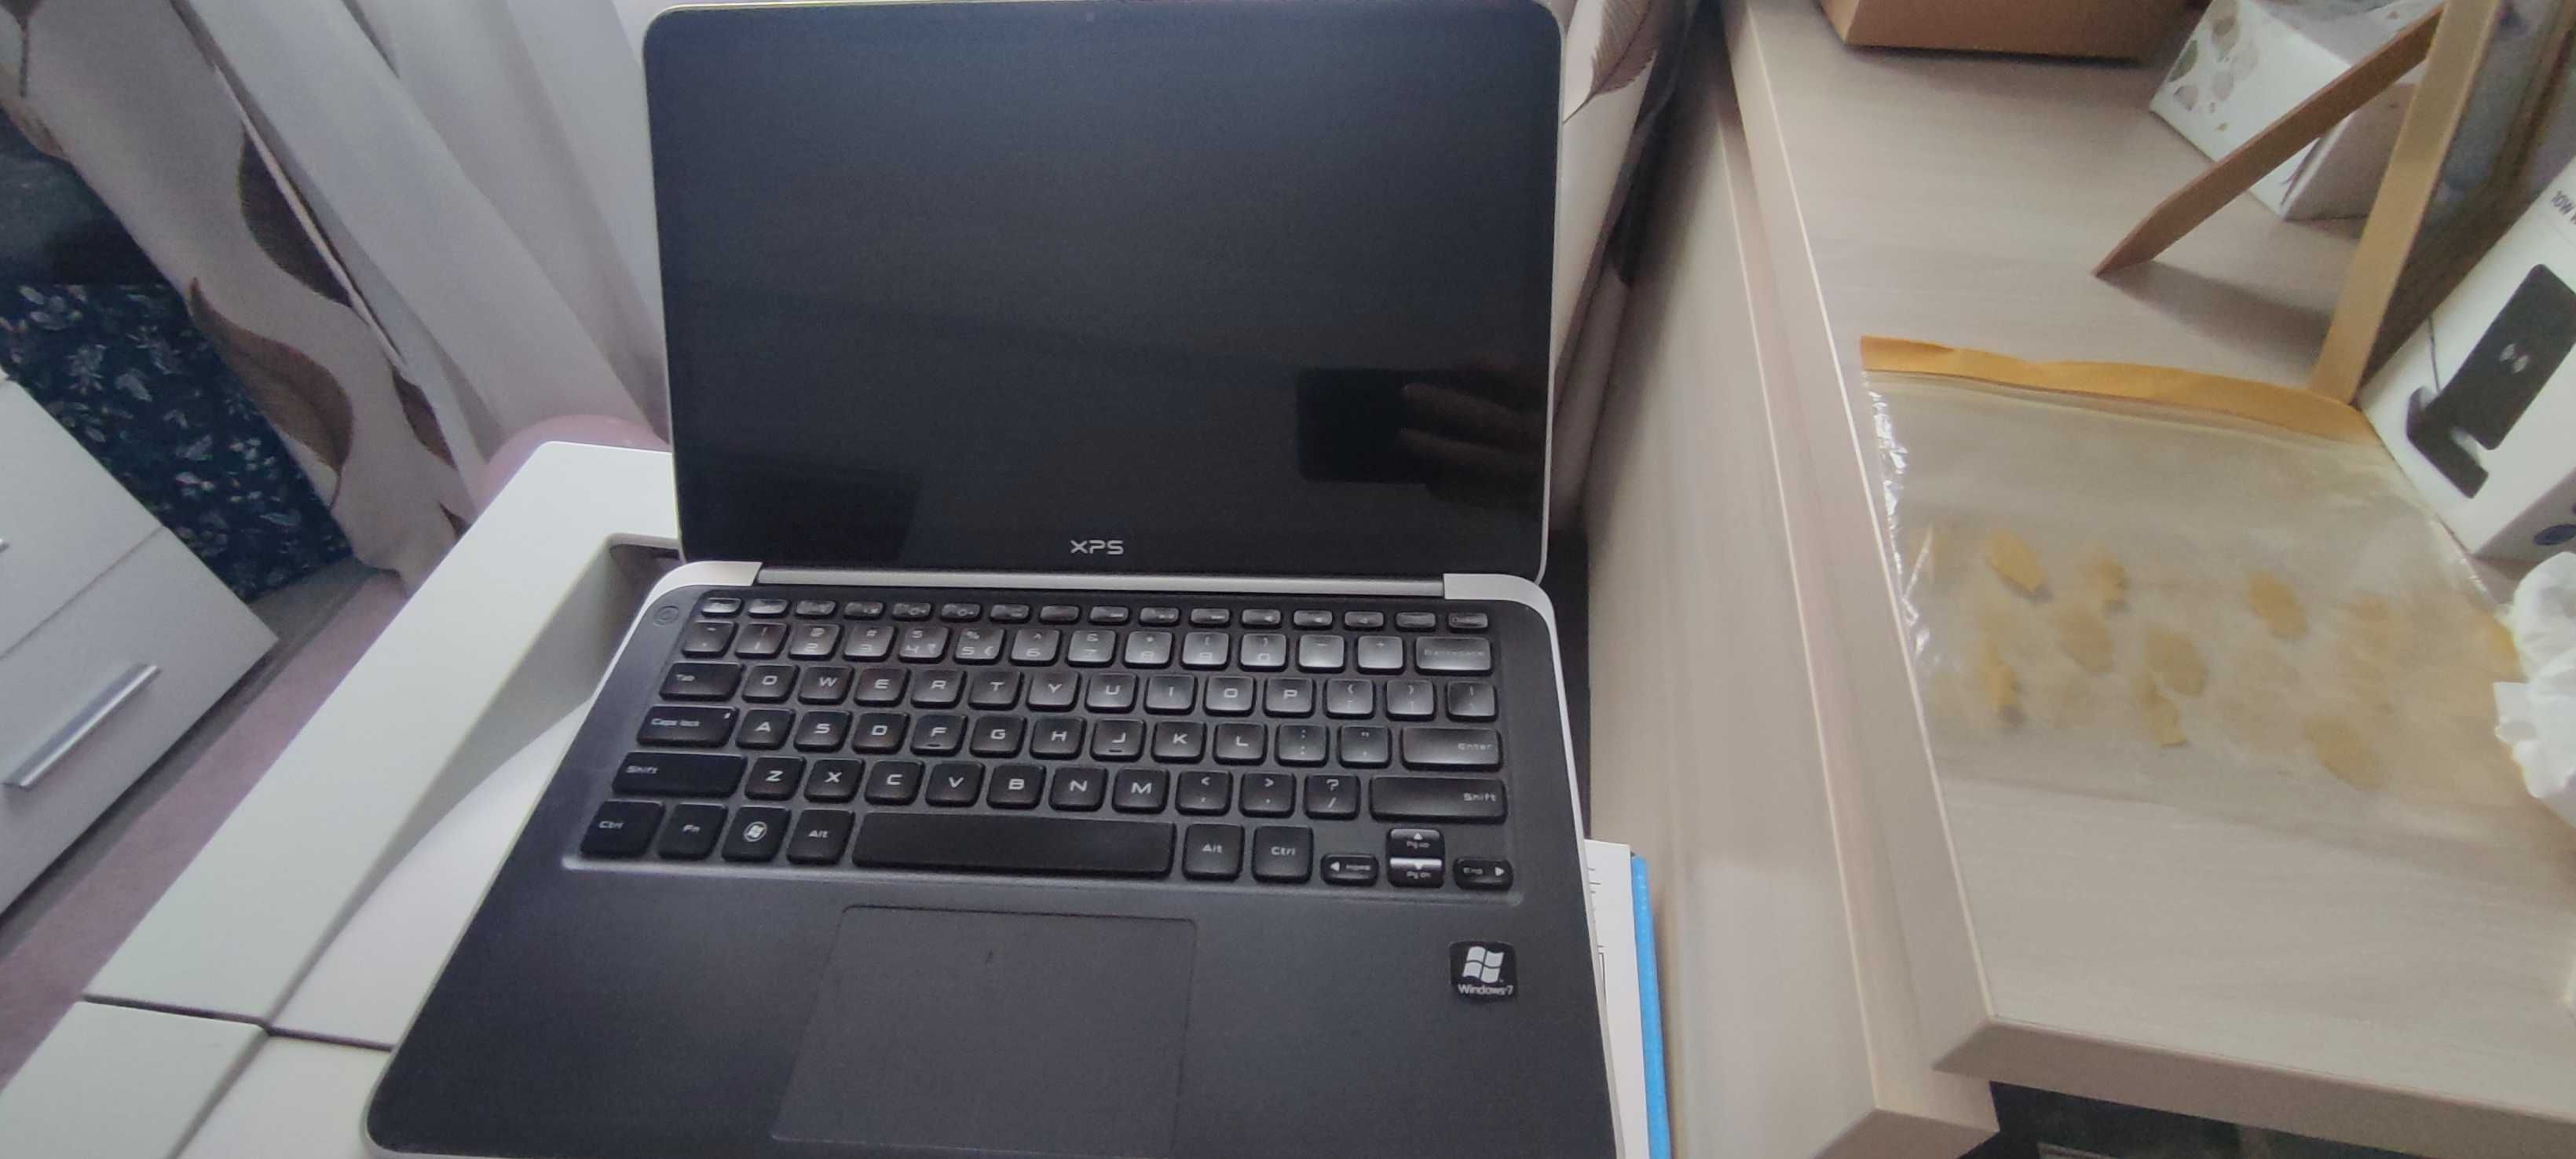 Dell xps 13 i7 / 250gb ssd / 4gb ram Laptop Ultrabook L321X